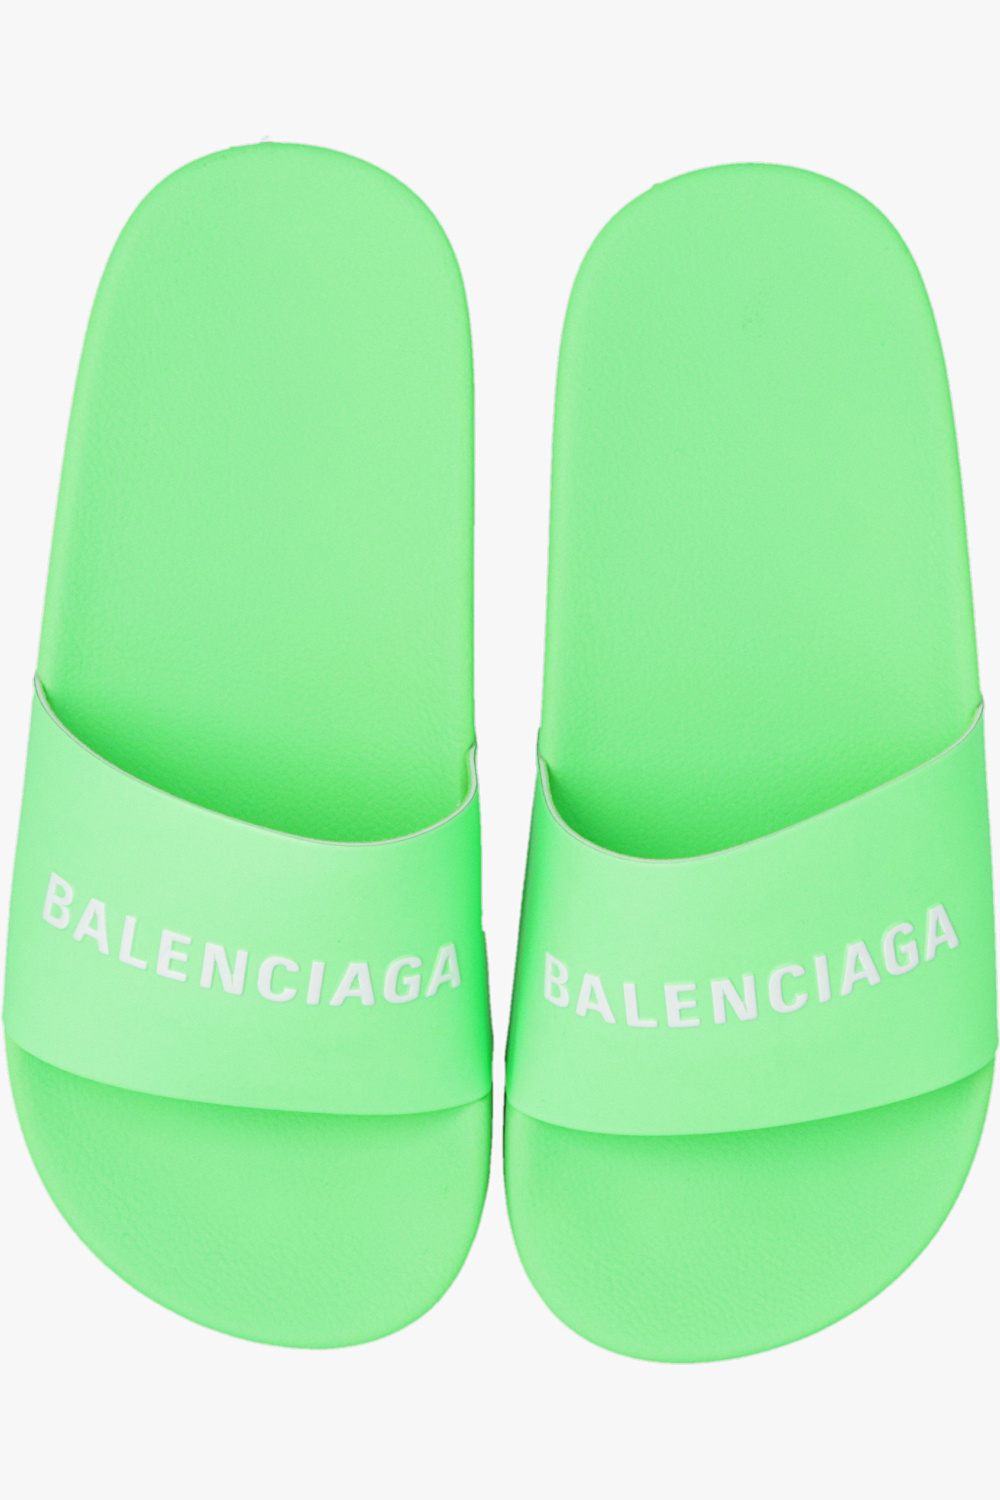 Balenciaga Kids Kids Idea Up 19-22 Alpine Ski Boots